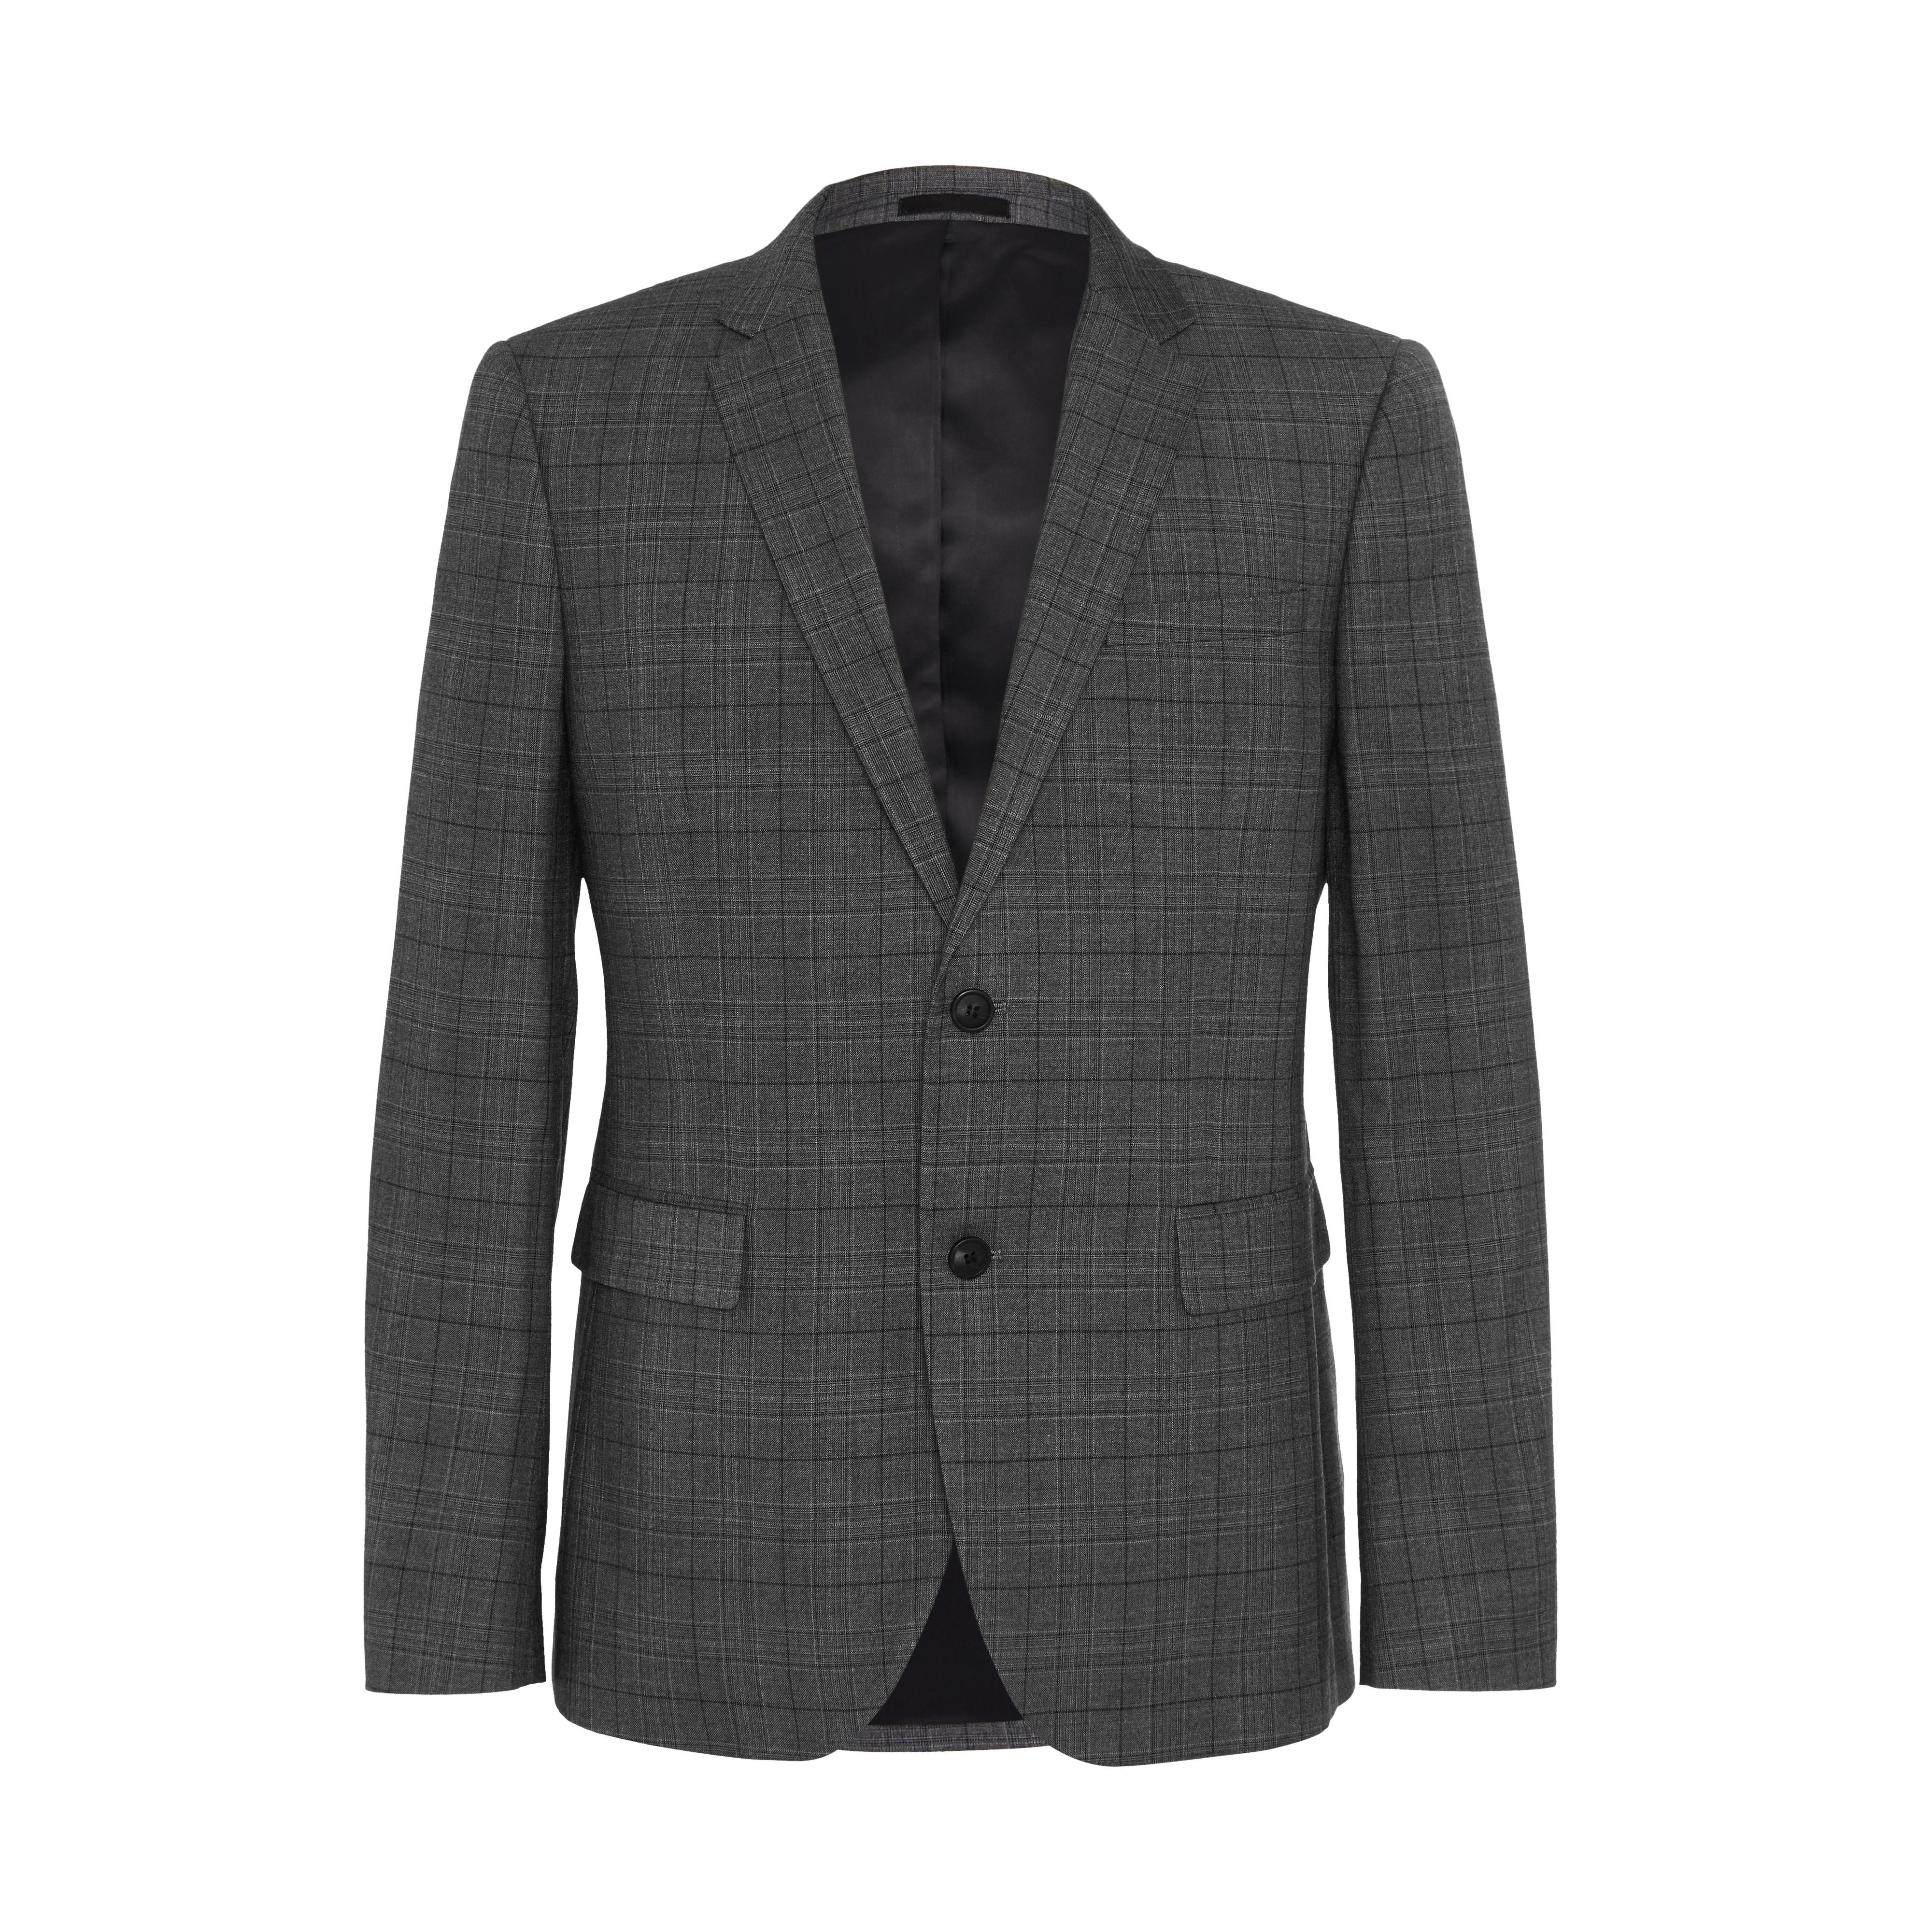 Gray Check Suit Jacket | Men's Suits | Men's Style | Our Menswear ...